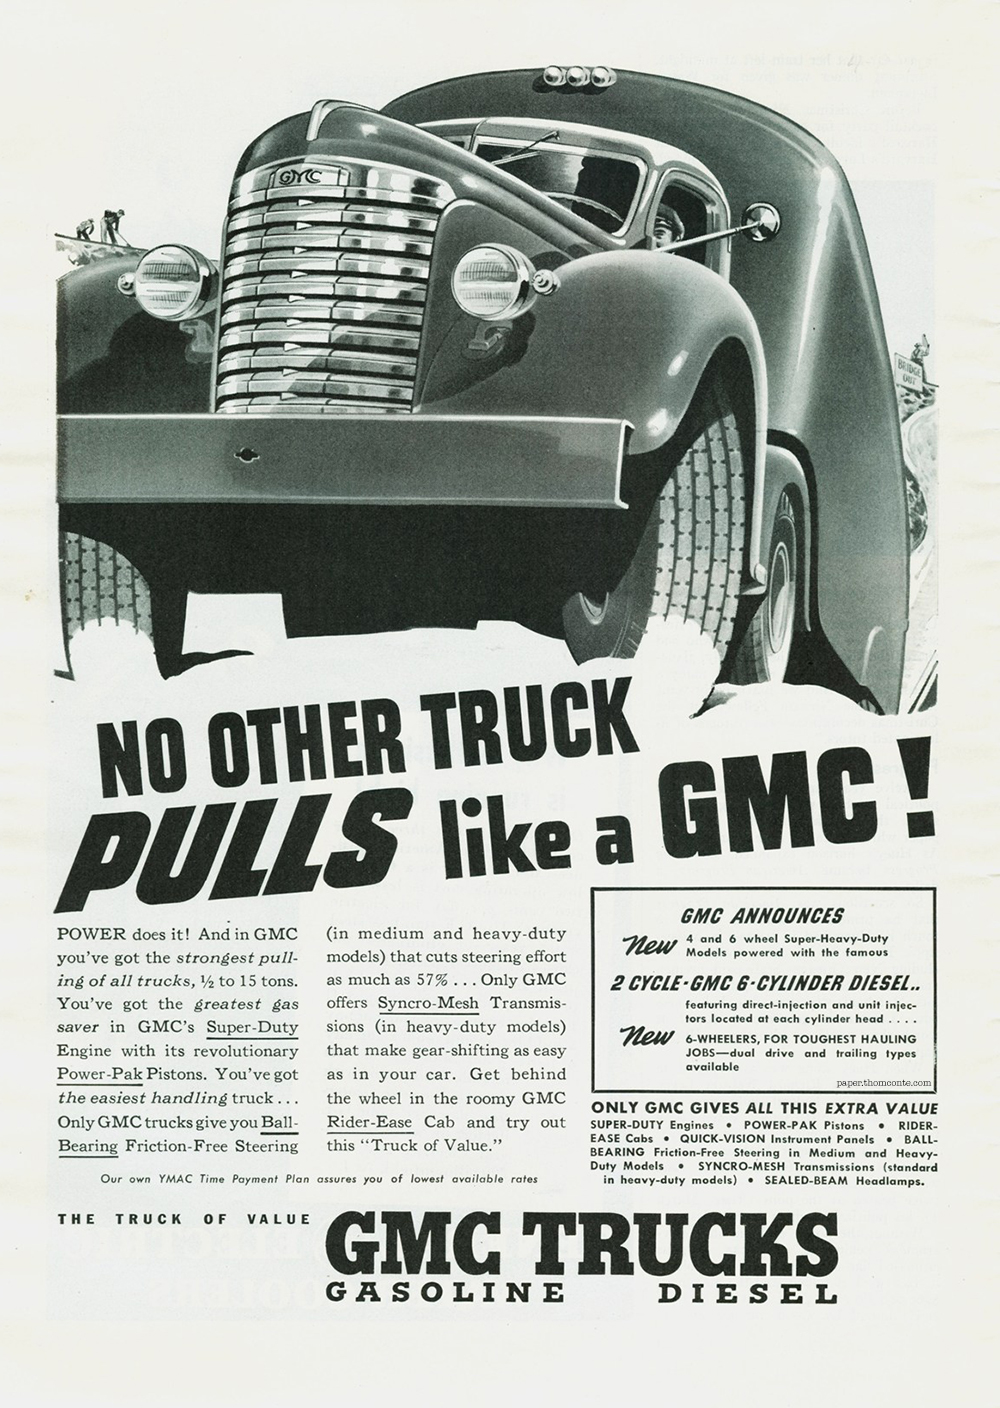 GMC Truck - NO OTHER TRUCK PULLSlike a GMC